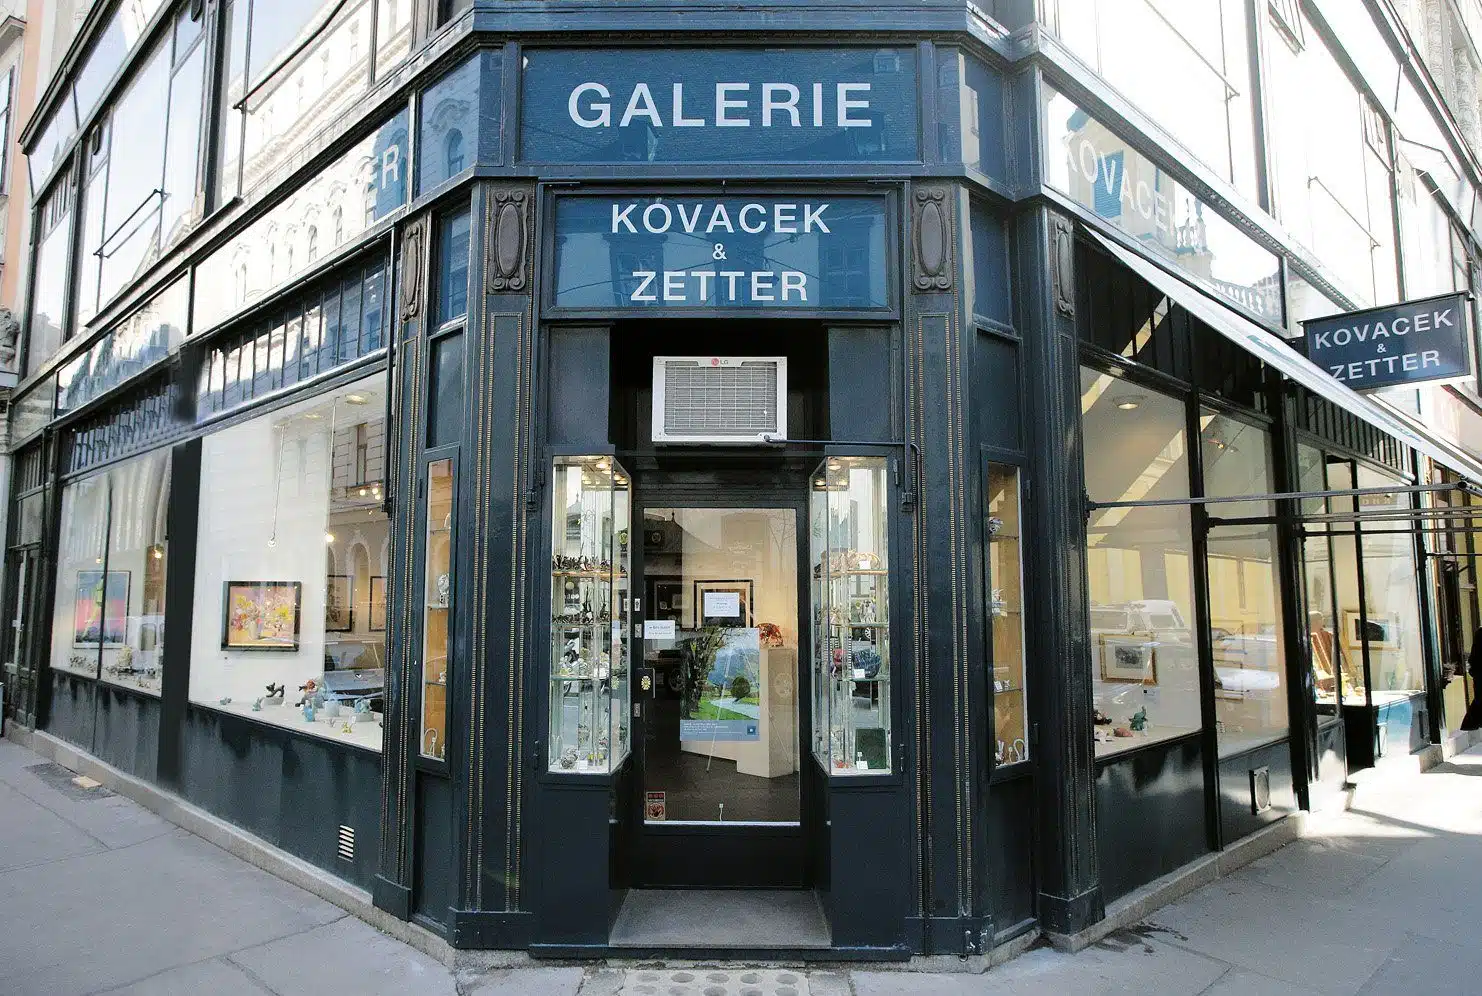 Die Galerie Kovacek & Zetter in der Wiener Innenstadt an der Adresse Stallburggasse 2